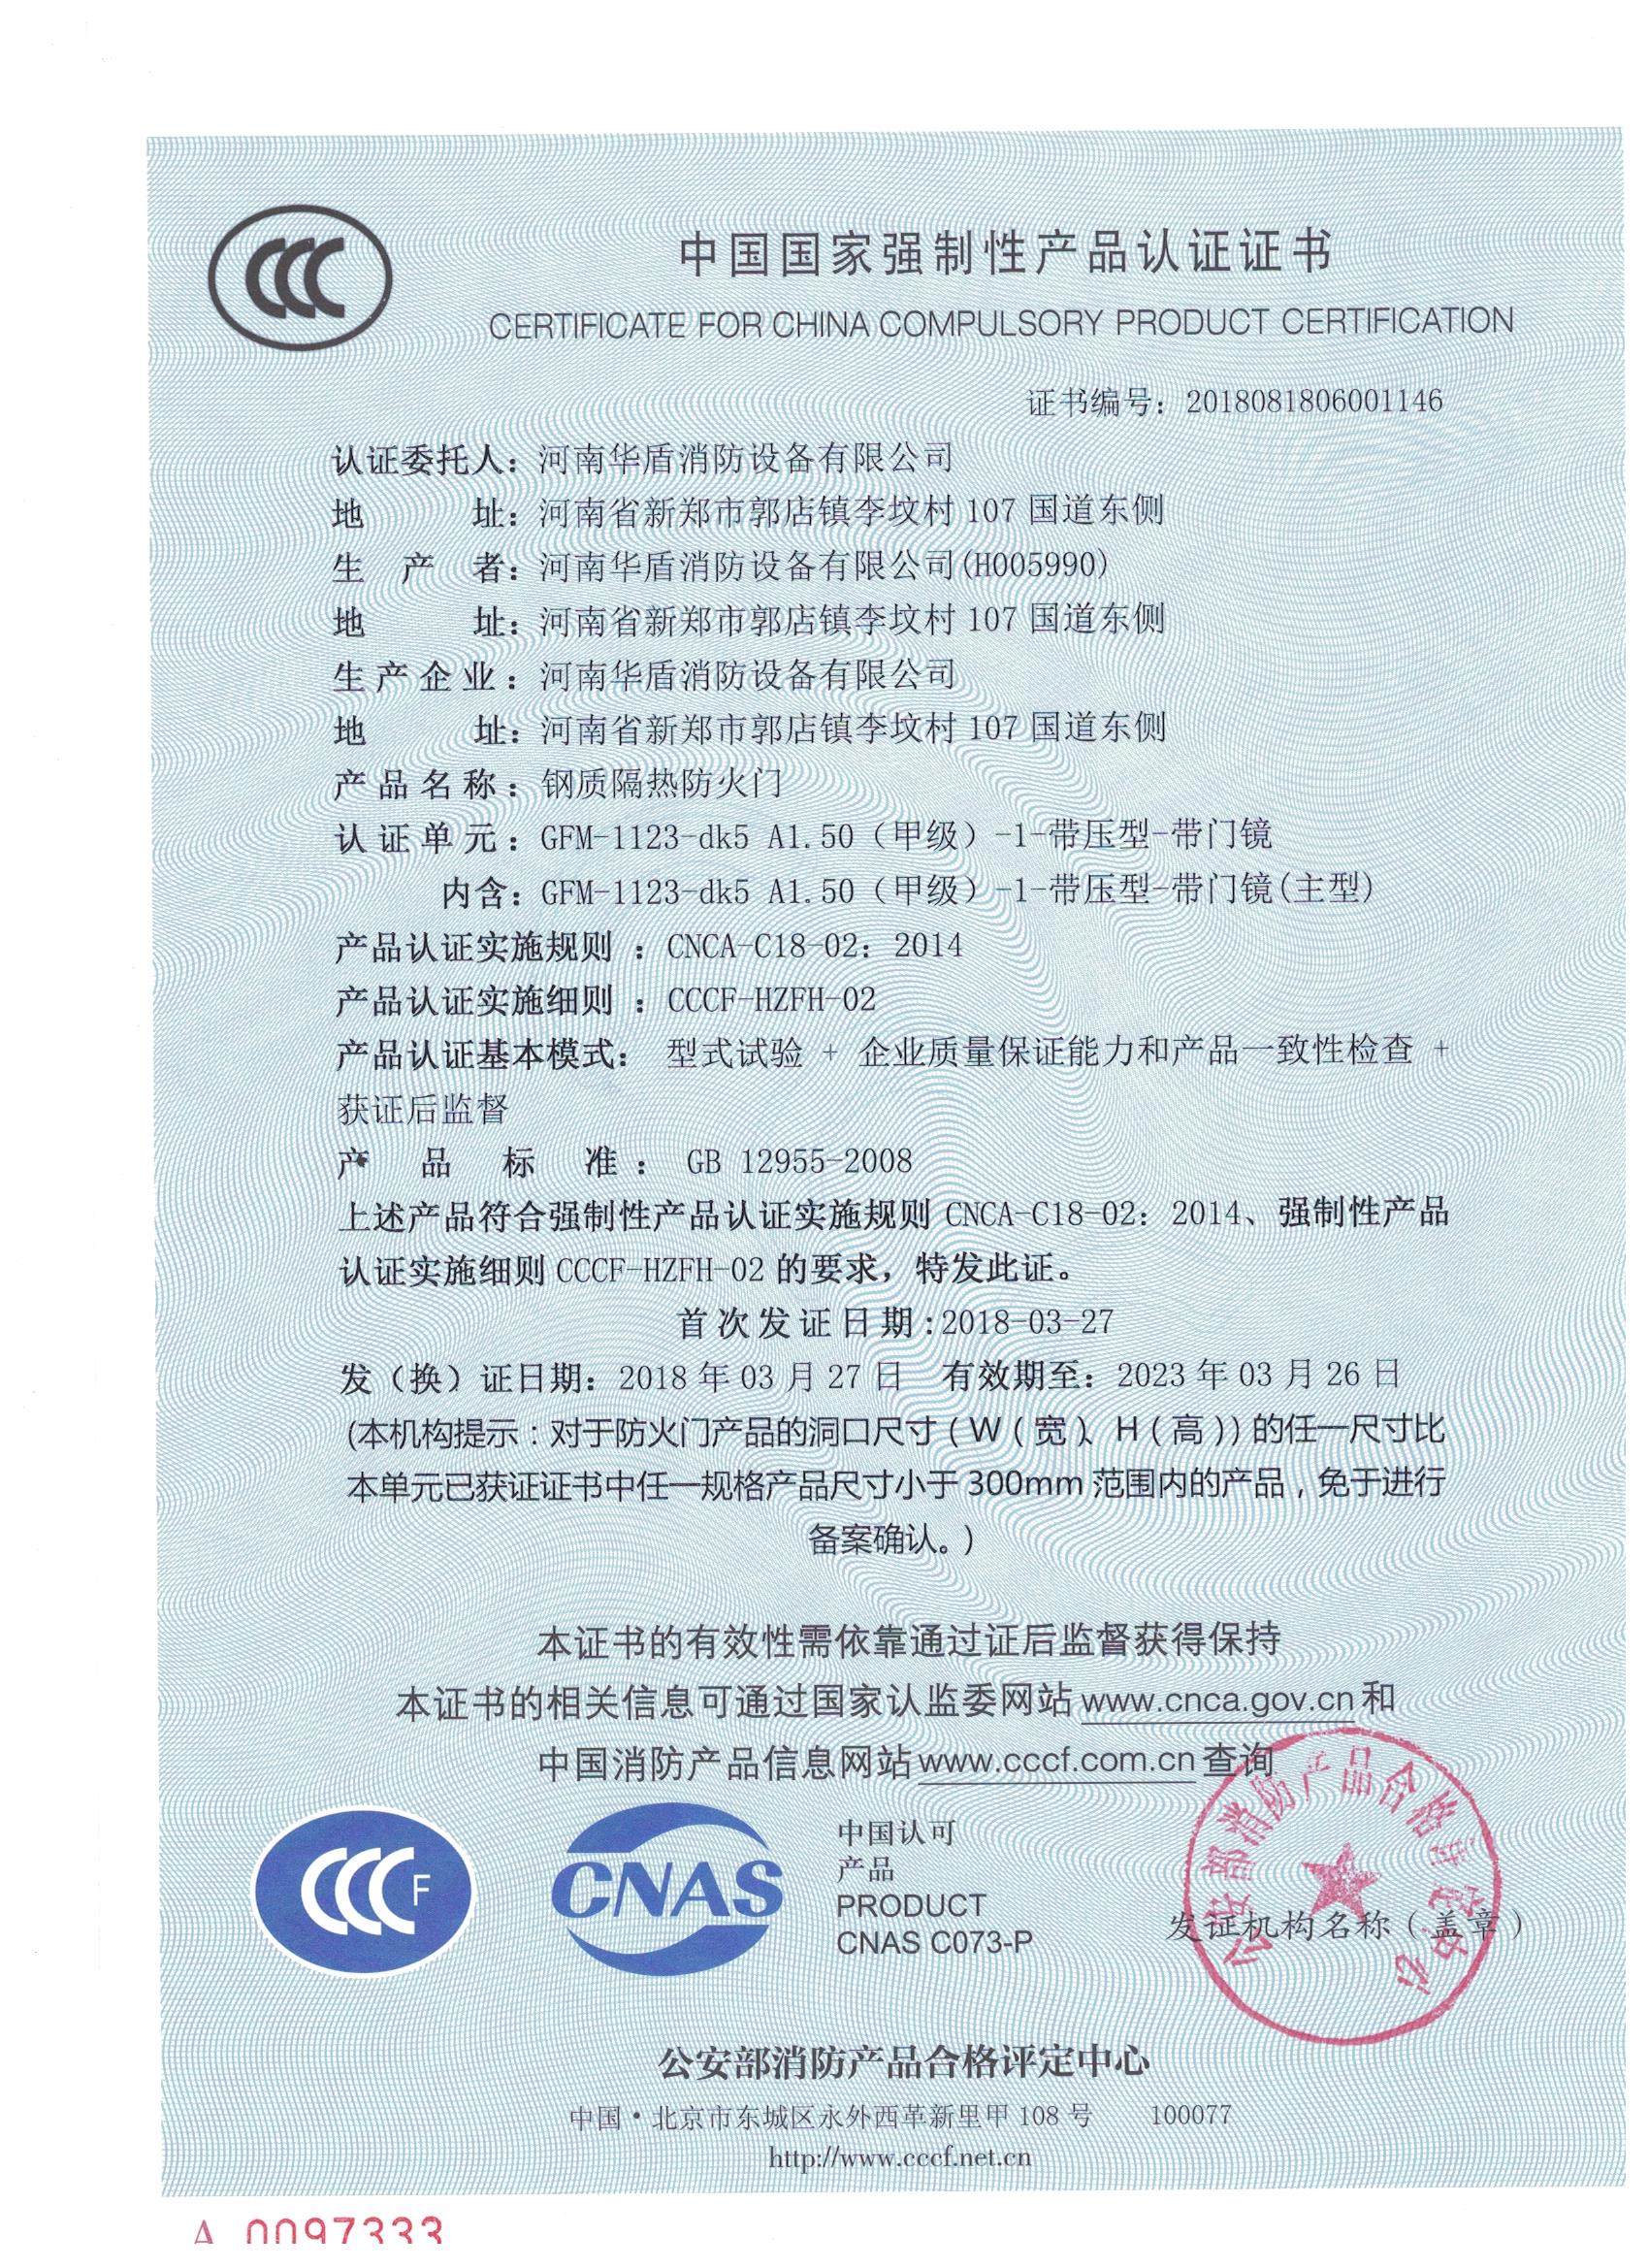 信阳GFM-1123-dk5A1.50(甲级）-1-3C证书